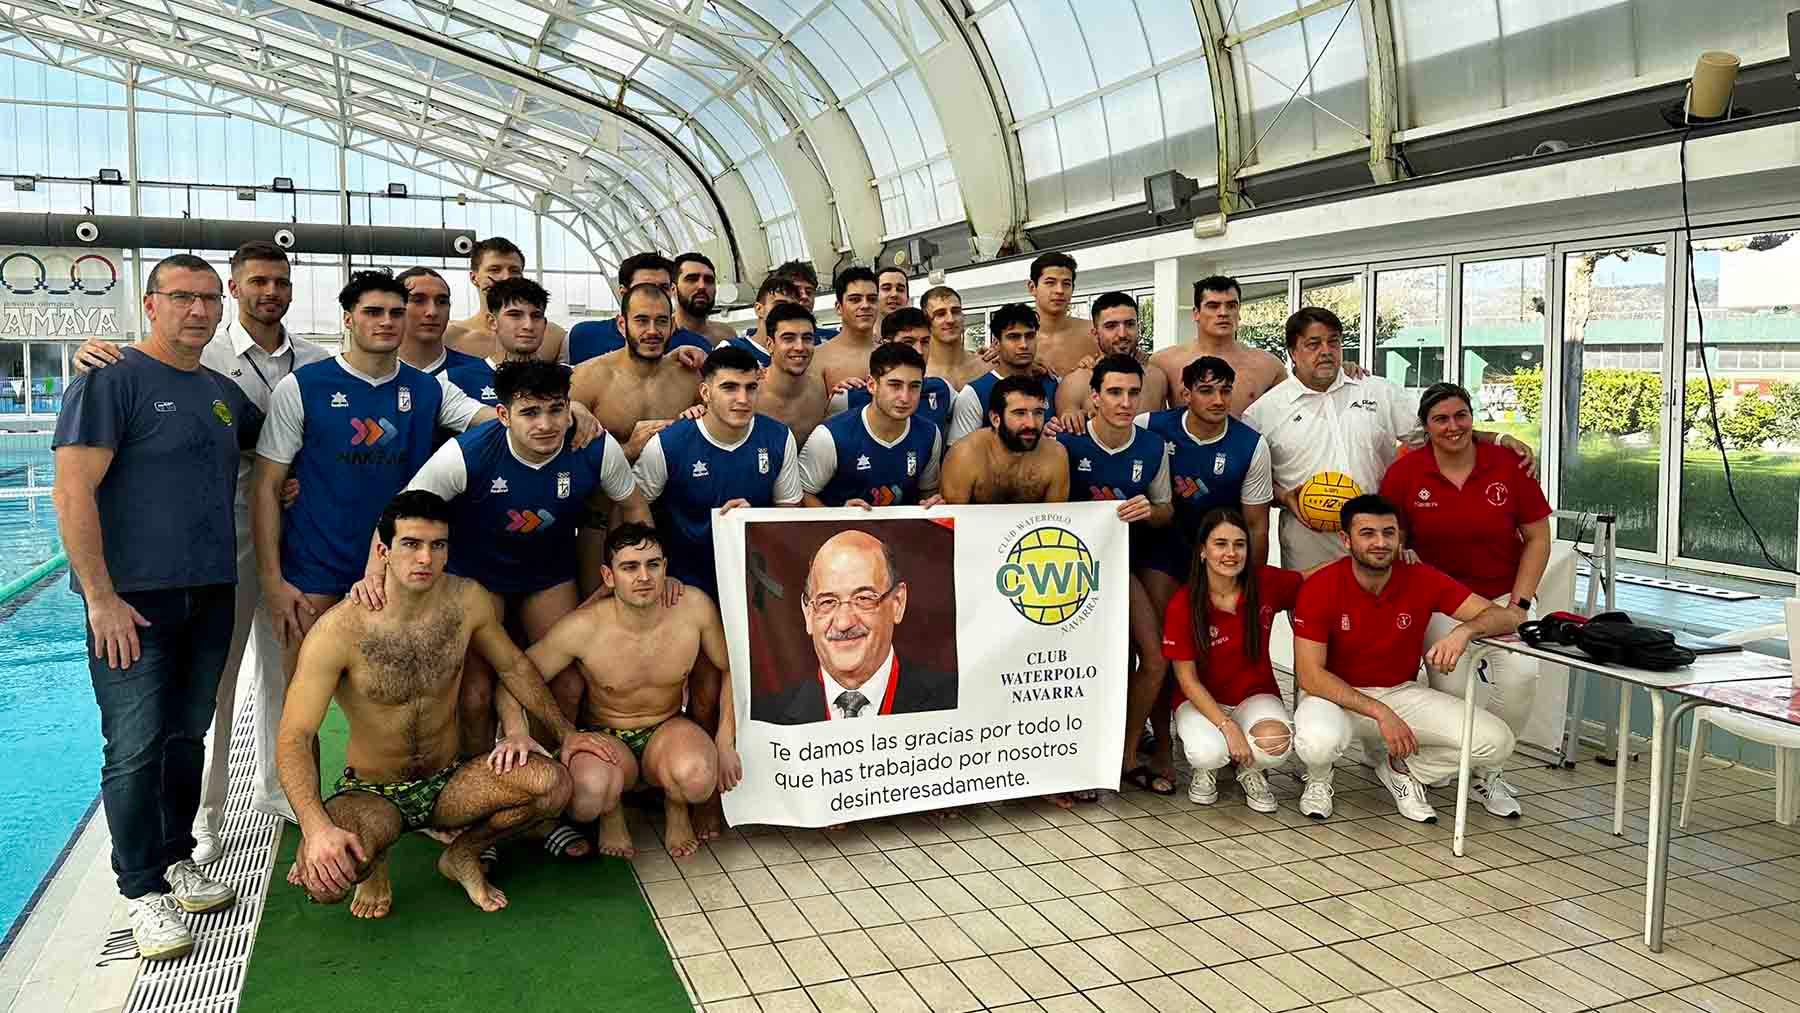 Los jugadores del Waterpolo Navarra y del Horta han homenajeado antes del partido al pamplonés Fermín Manso, fallecido recientemente. @CWNavarra